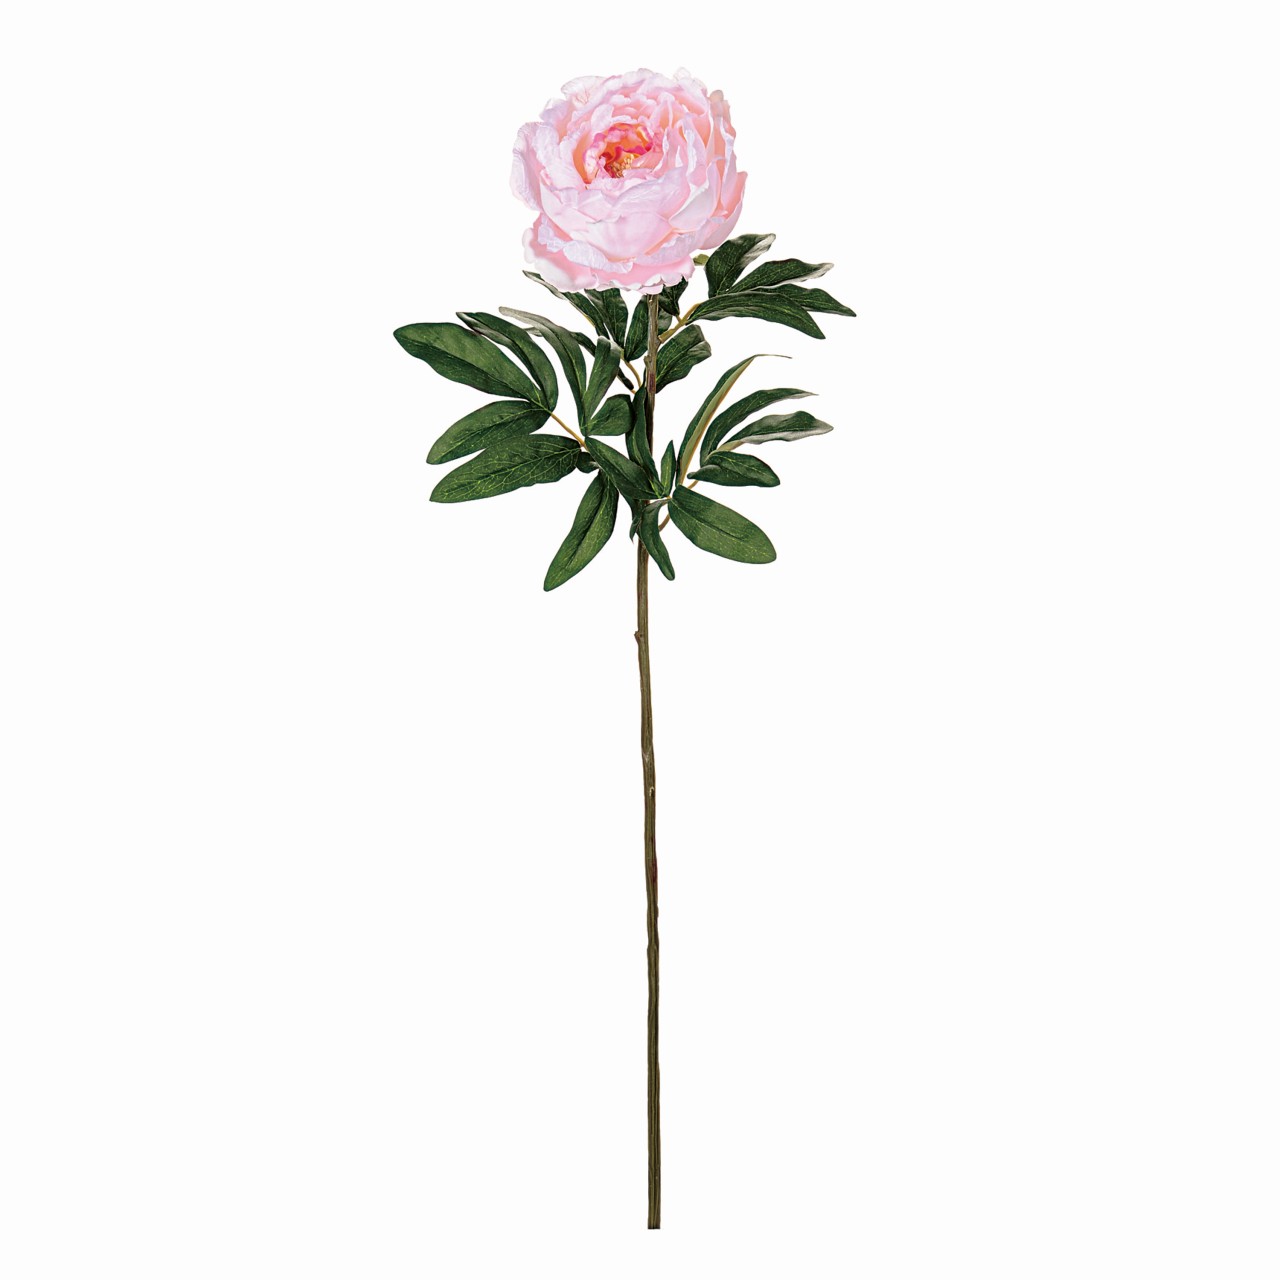 マイフラ 通販 Magiq ベルーナピオニー ピンク アーティフィシャルフラワー 造花 Fm 002 ピオニー 牡丹 ピンク Magiq アーティフィシャルフラワー 造花 全国にmagiq 花器 花資材などをお届けします